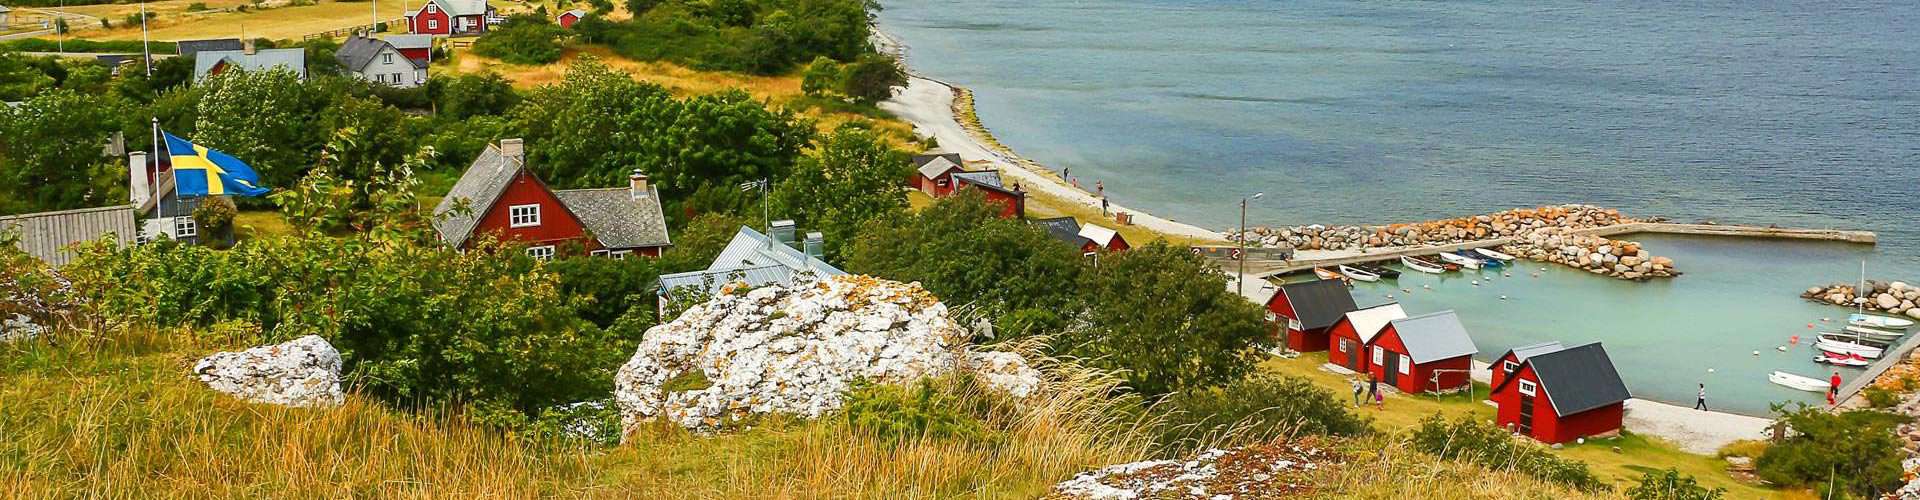 Gesichte und Natur hautnah: das Gotland-Wikingerdorf in Tofta